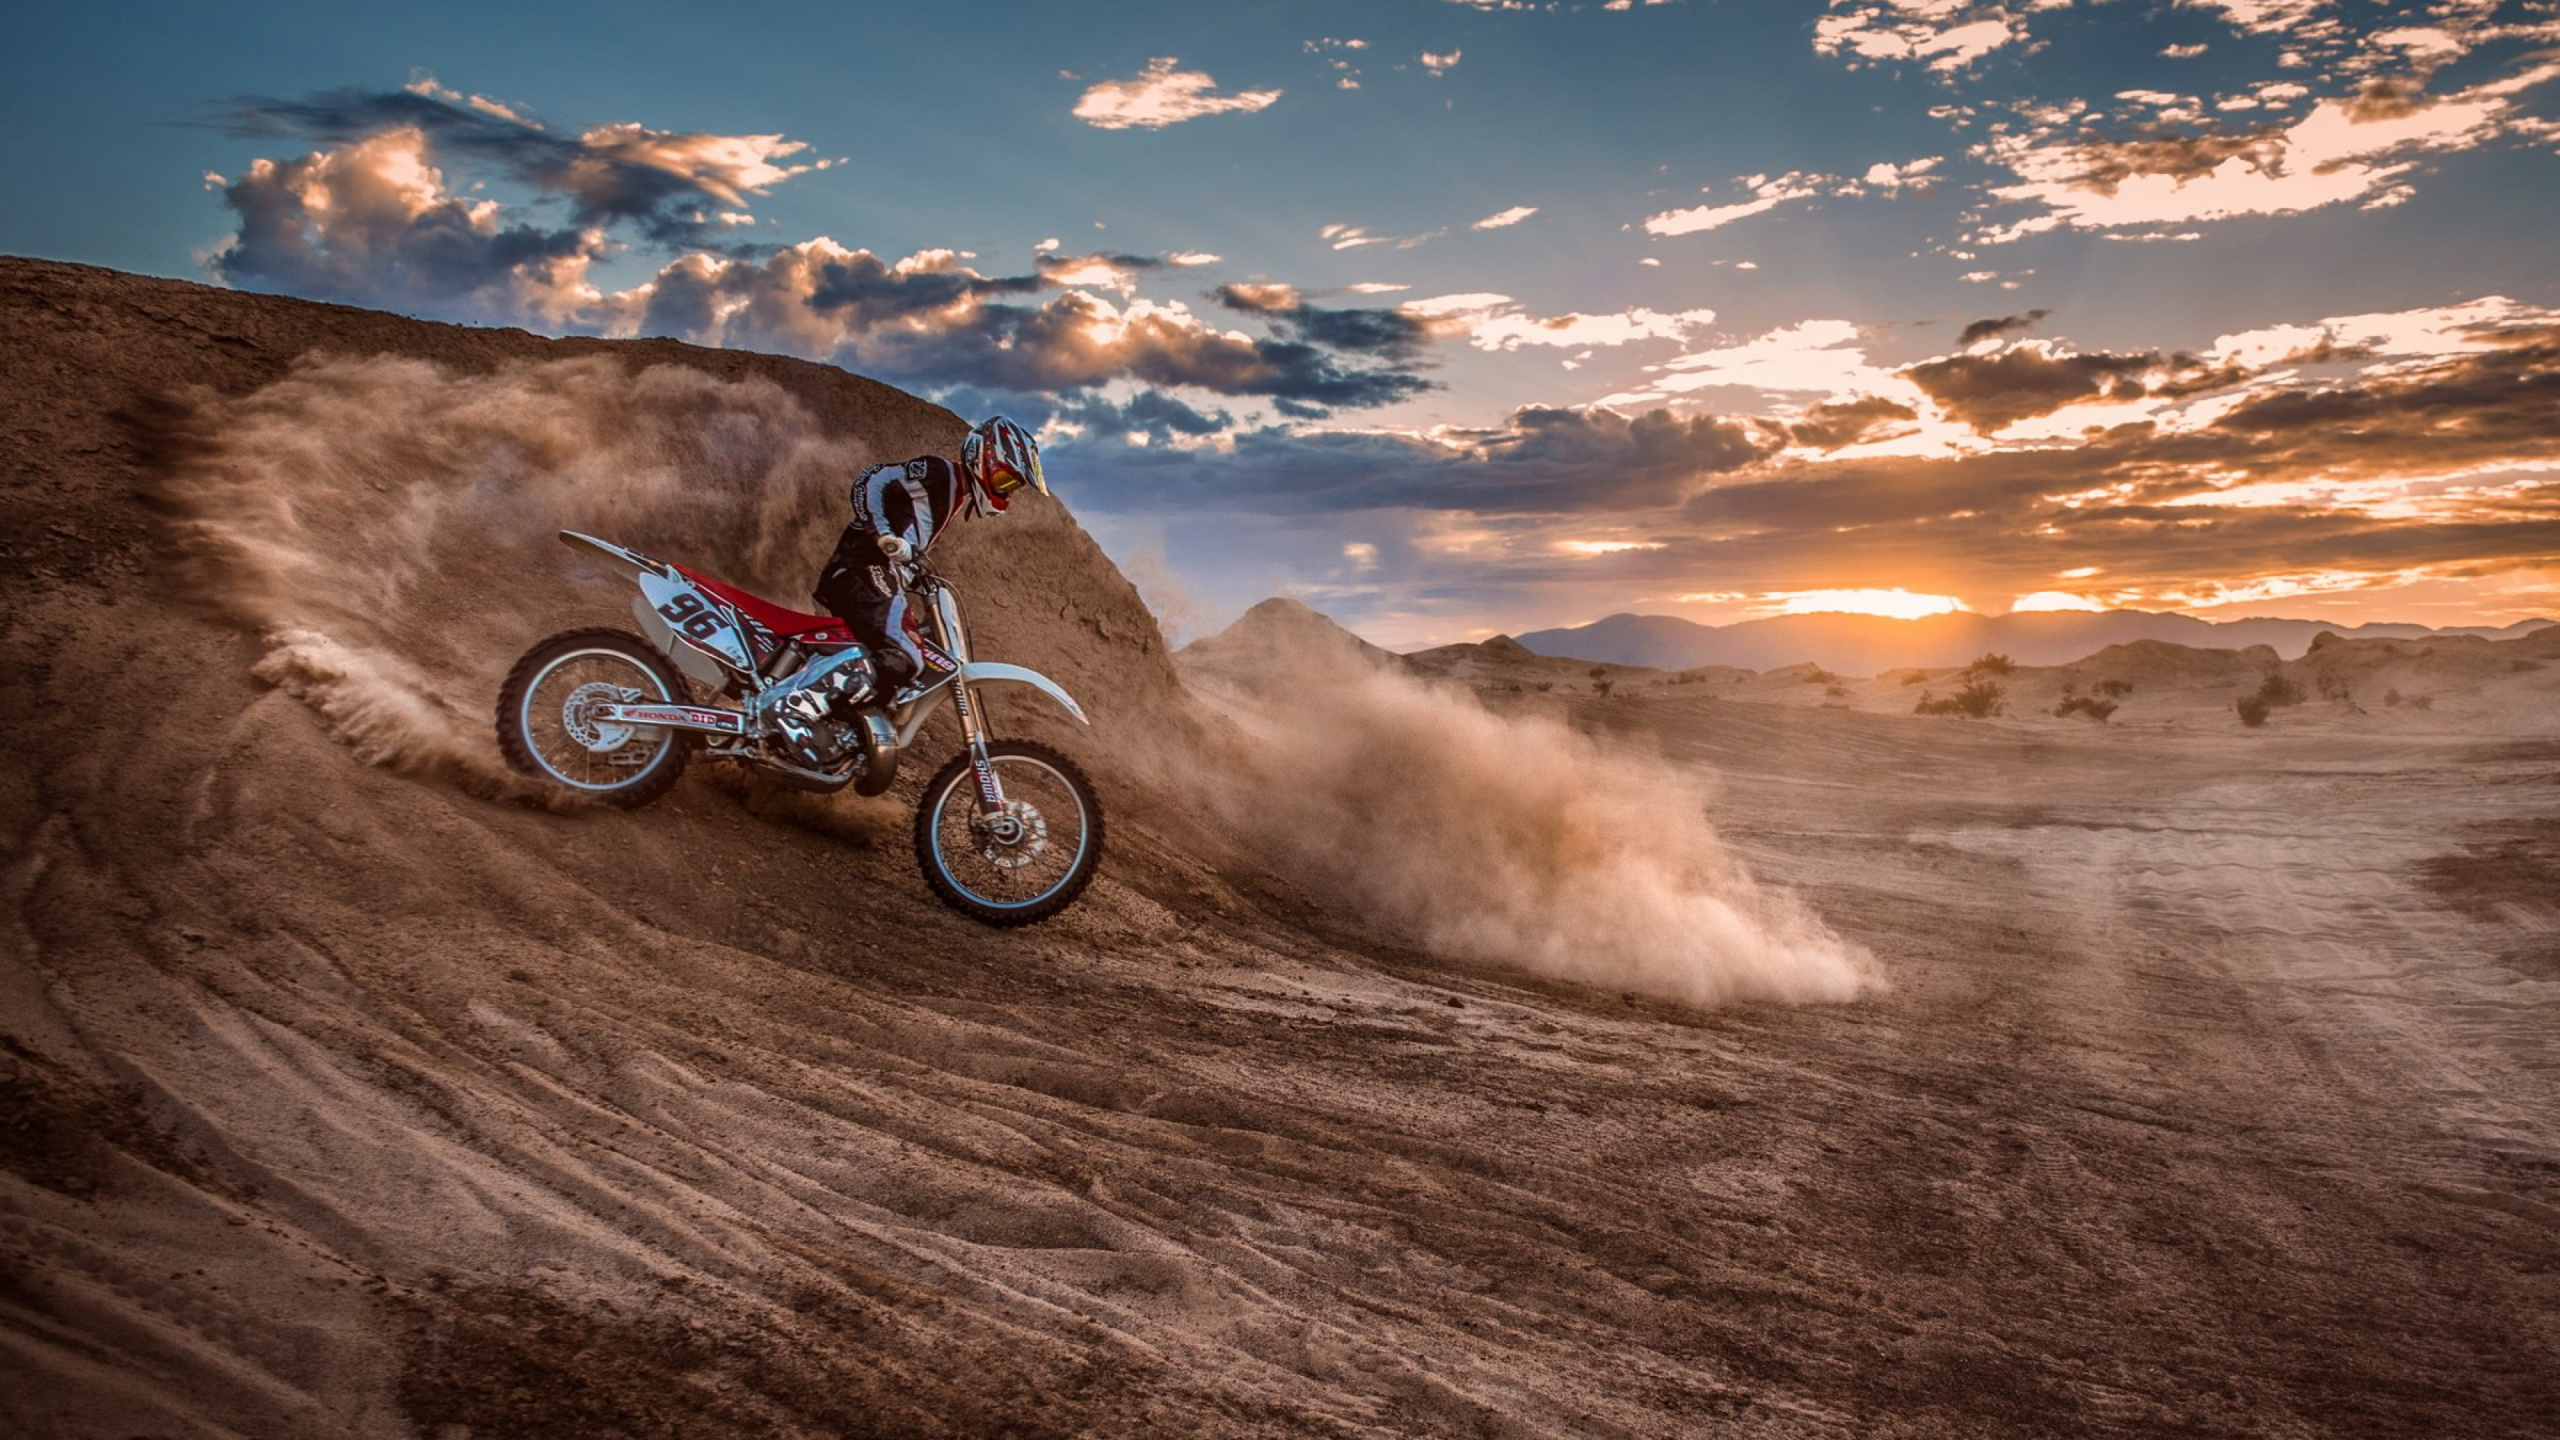 Mann, Der Tagsüber Motocross-Dirtbike Auf Braunem Sand Fährt. Wallpaper in 2560x1440 Resolution